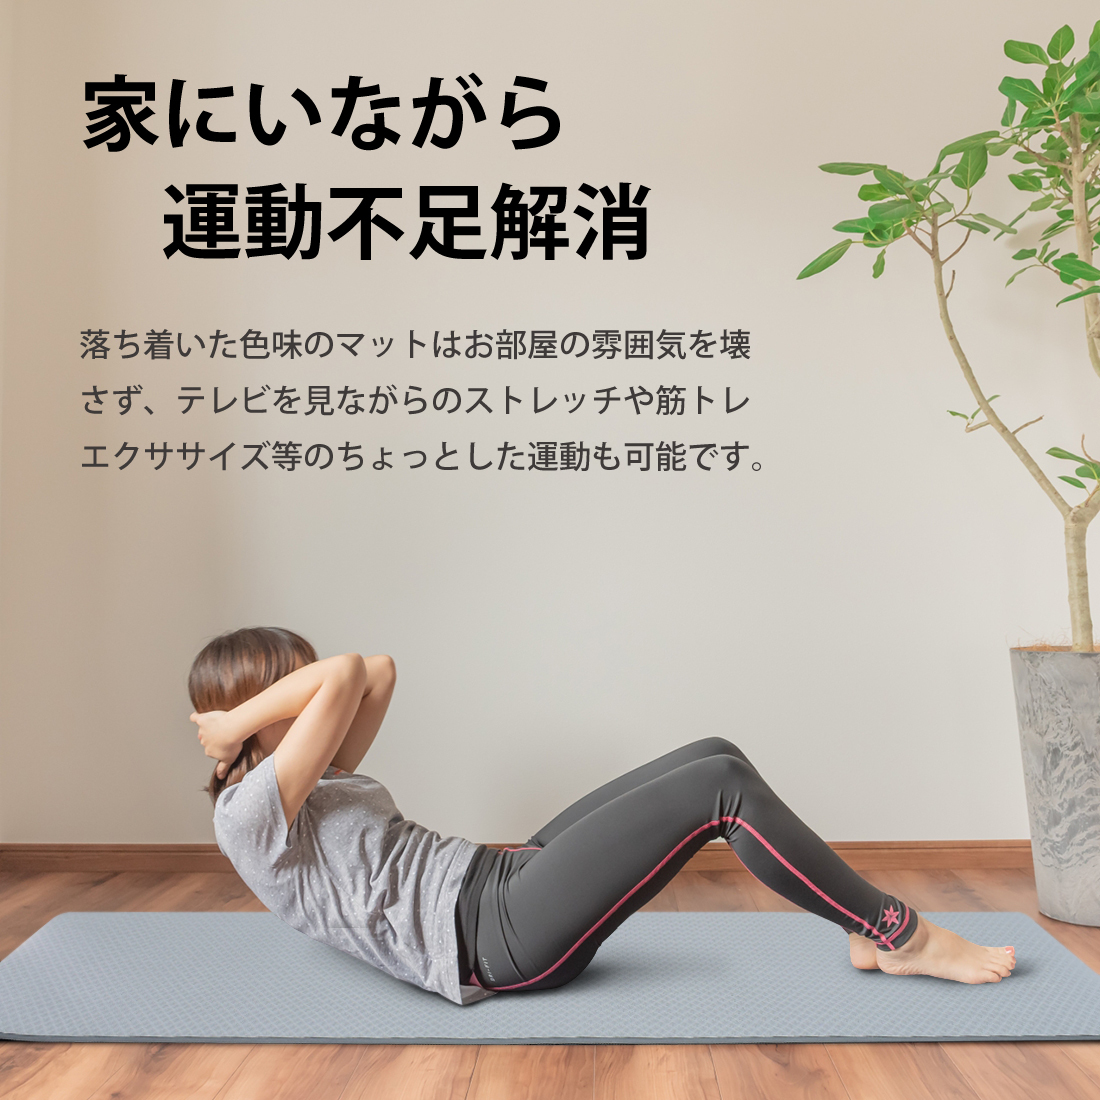  yoga mat 10mm high class TPE material less smell slipping difficult training mat exercise mat pilates mat training diet 